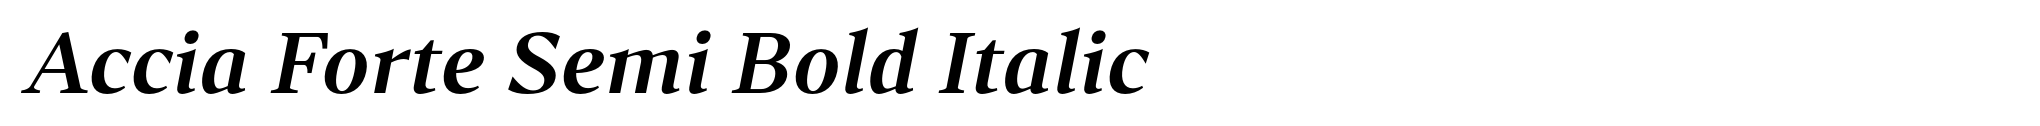 Accia Forte Semi Bold Italic image